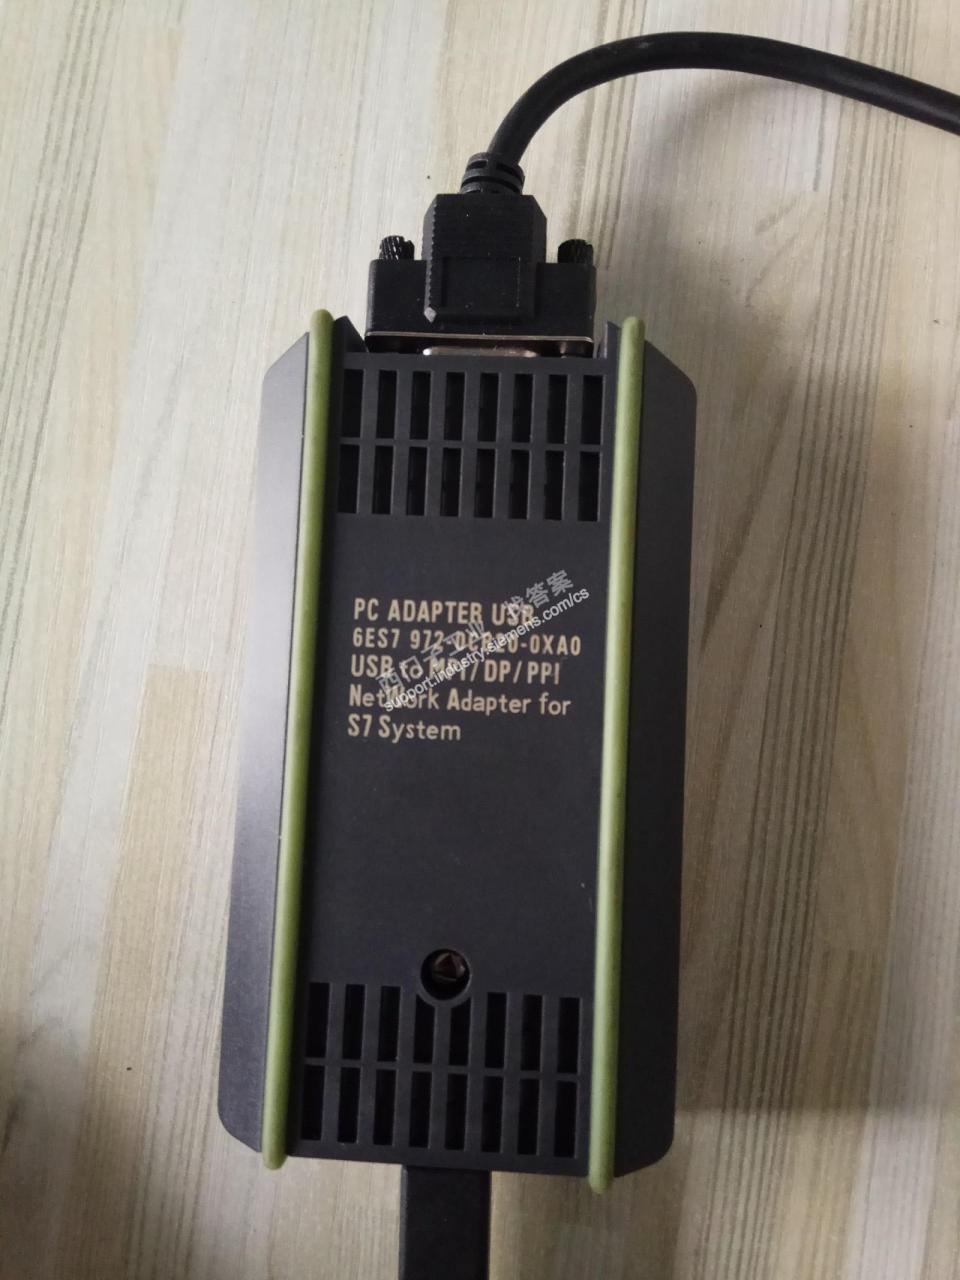 西门子810D系统，使用6ES7972-OCB20-OXAO电缆连接PC与X122时，通讯不上？